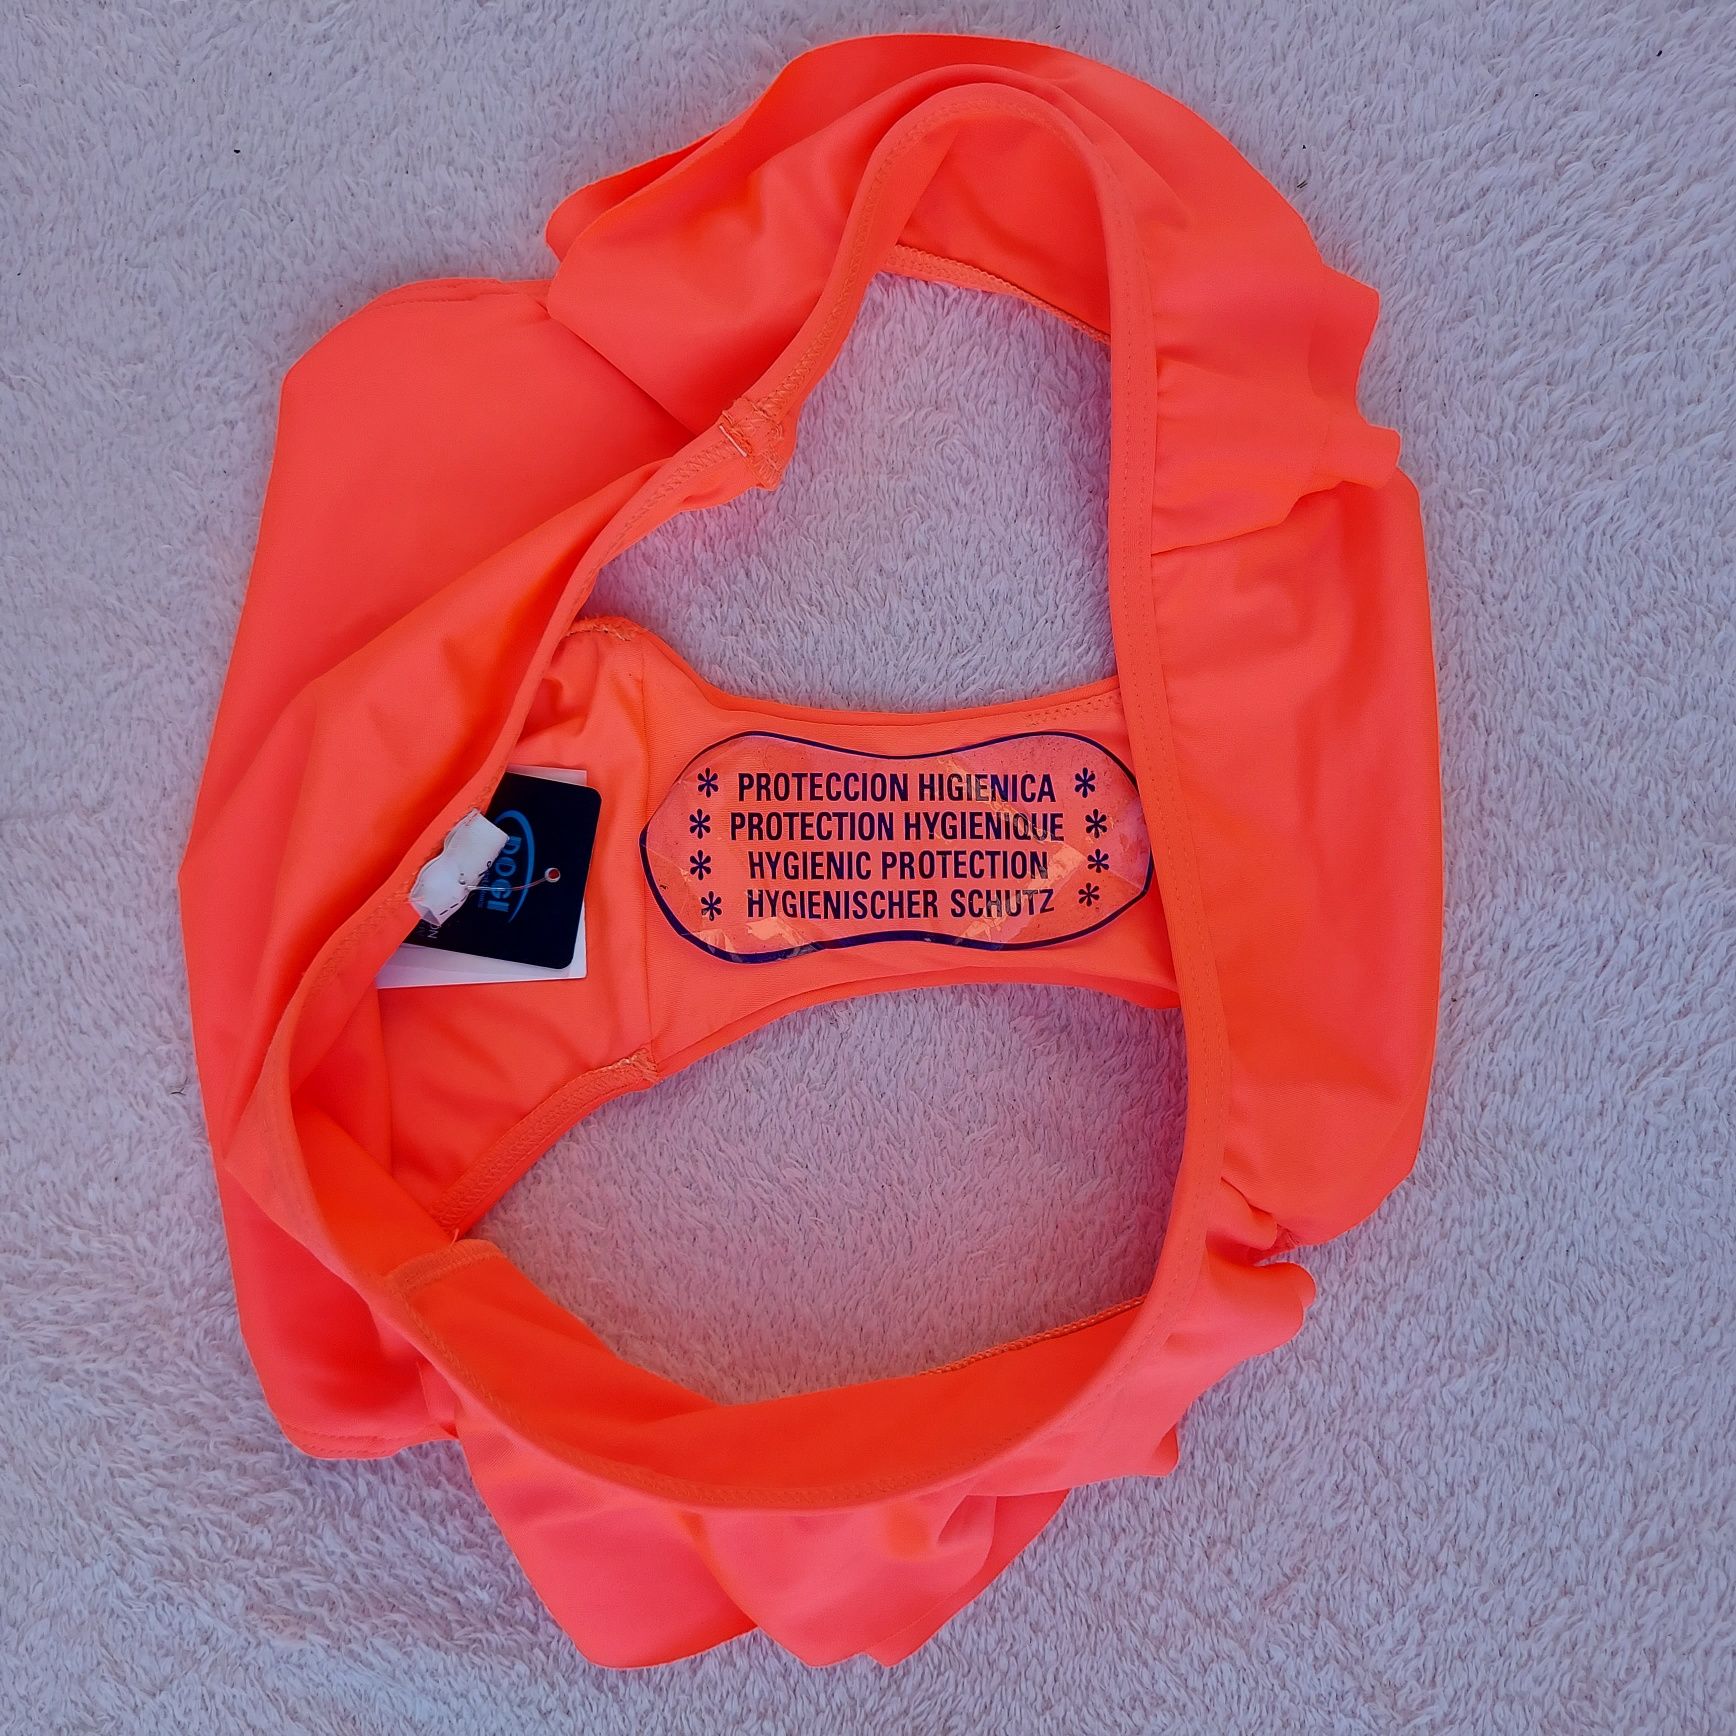 Pomarańczowe neonowe majtki bikini XS